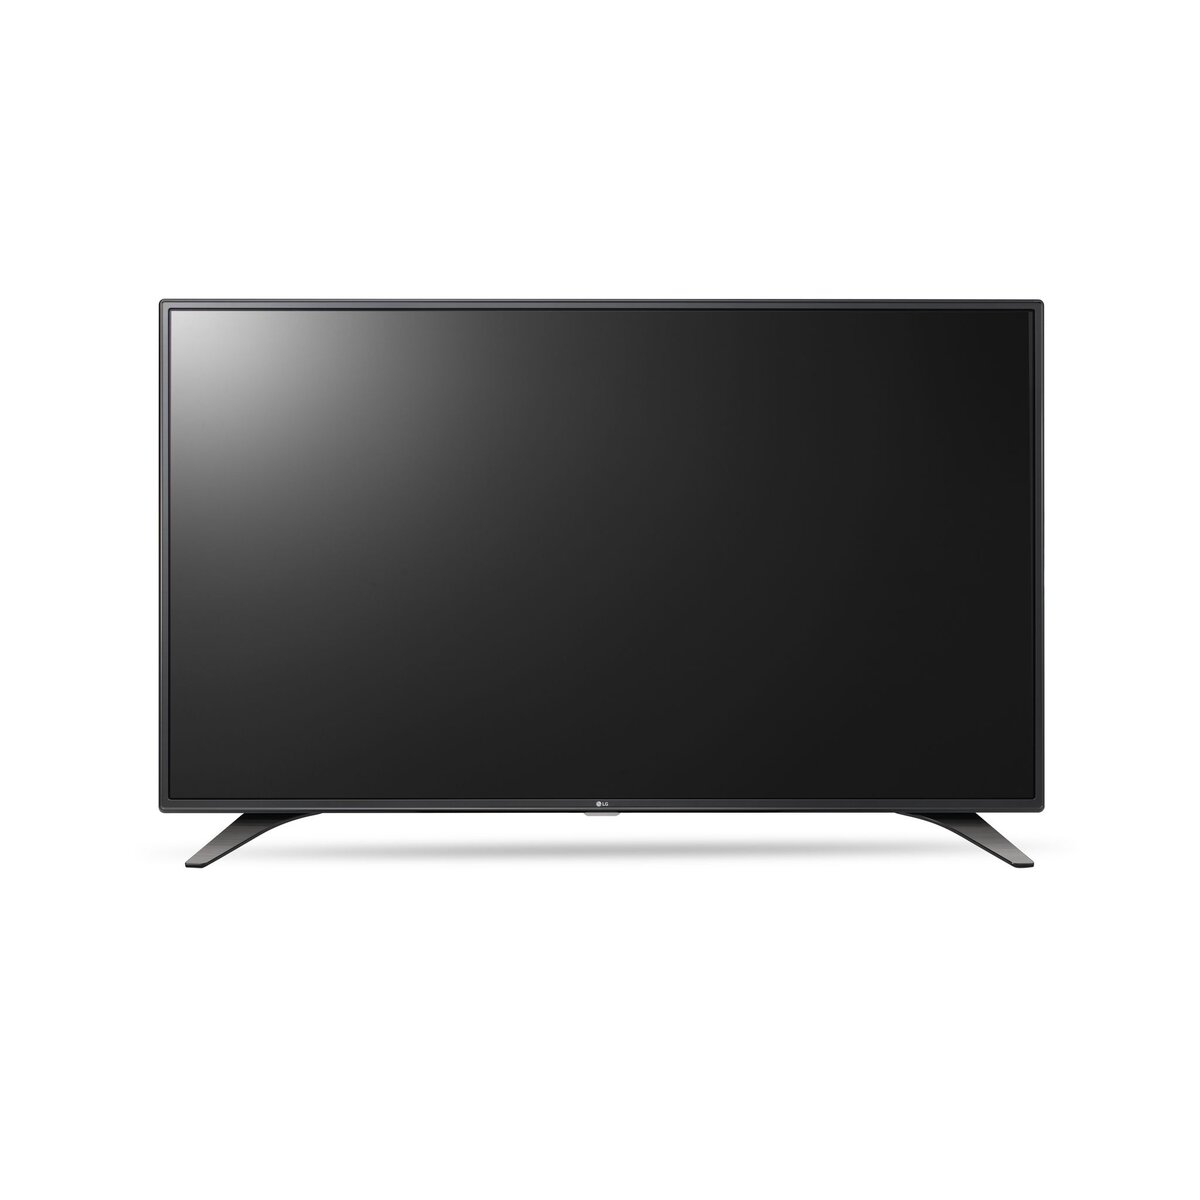 LG 32LH530V - TV - LED - Full HD - 32"/80 cm